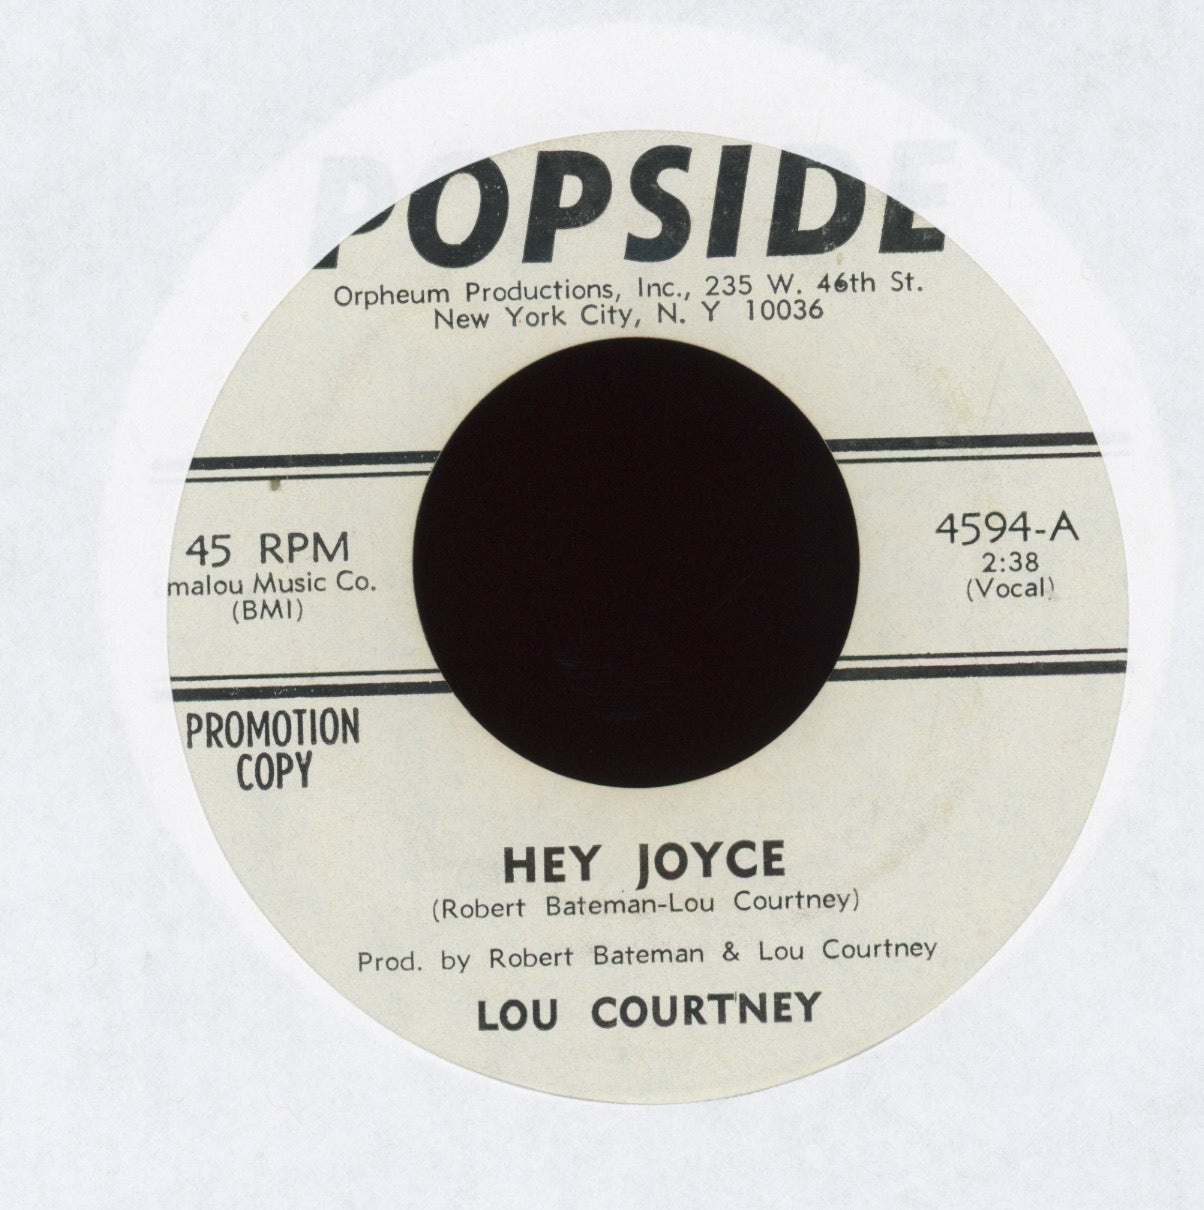 Lou Courtney - Hey Joyce on Popside Promo Funk 45